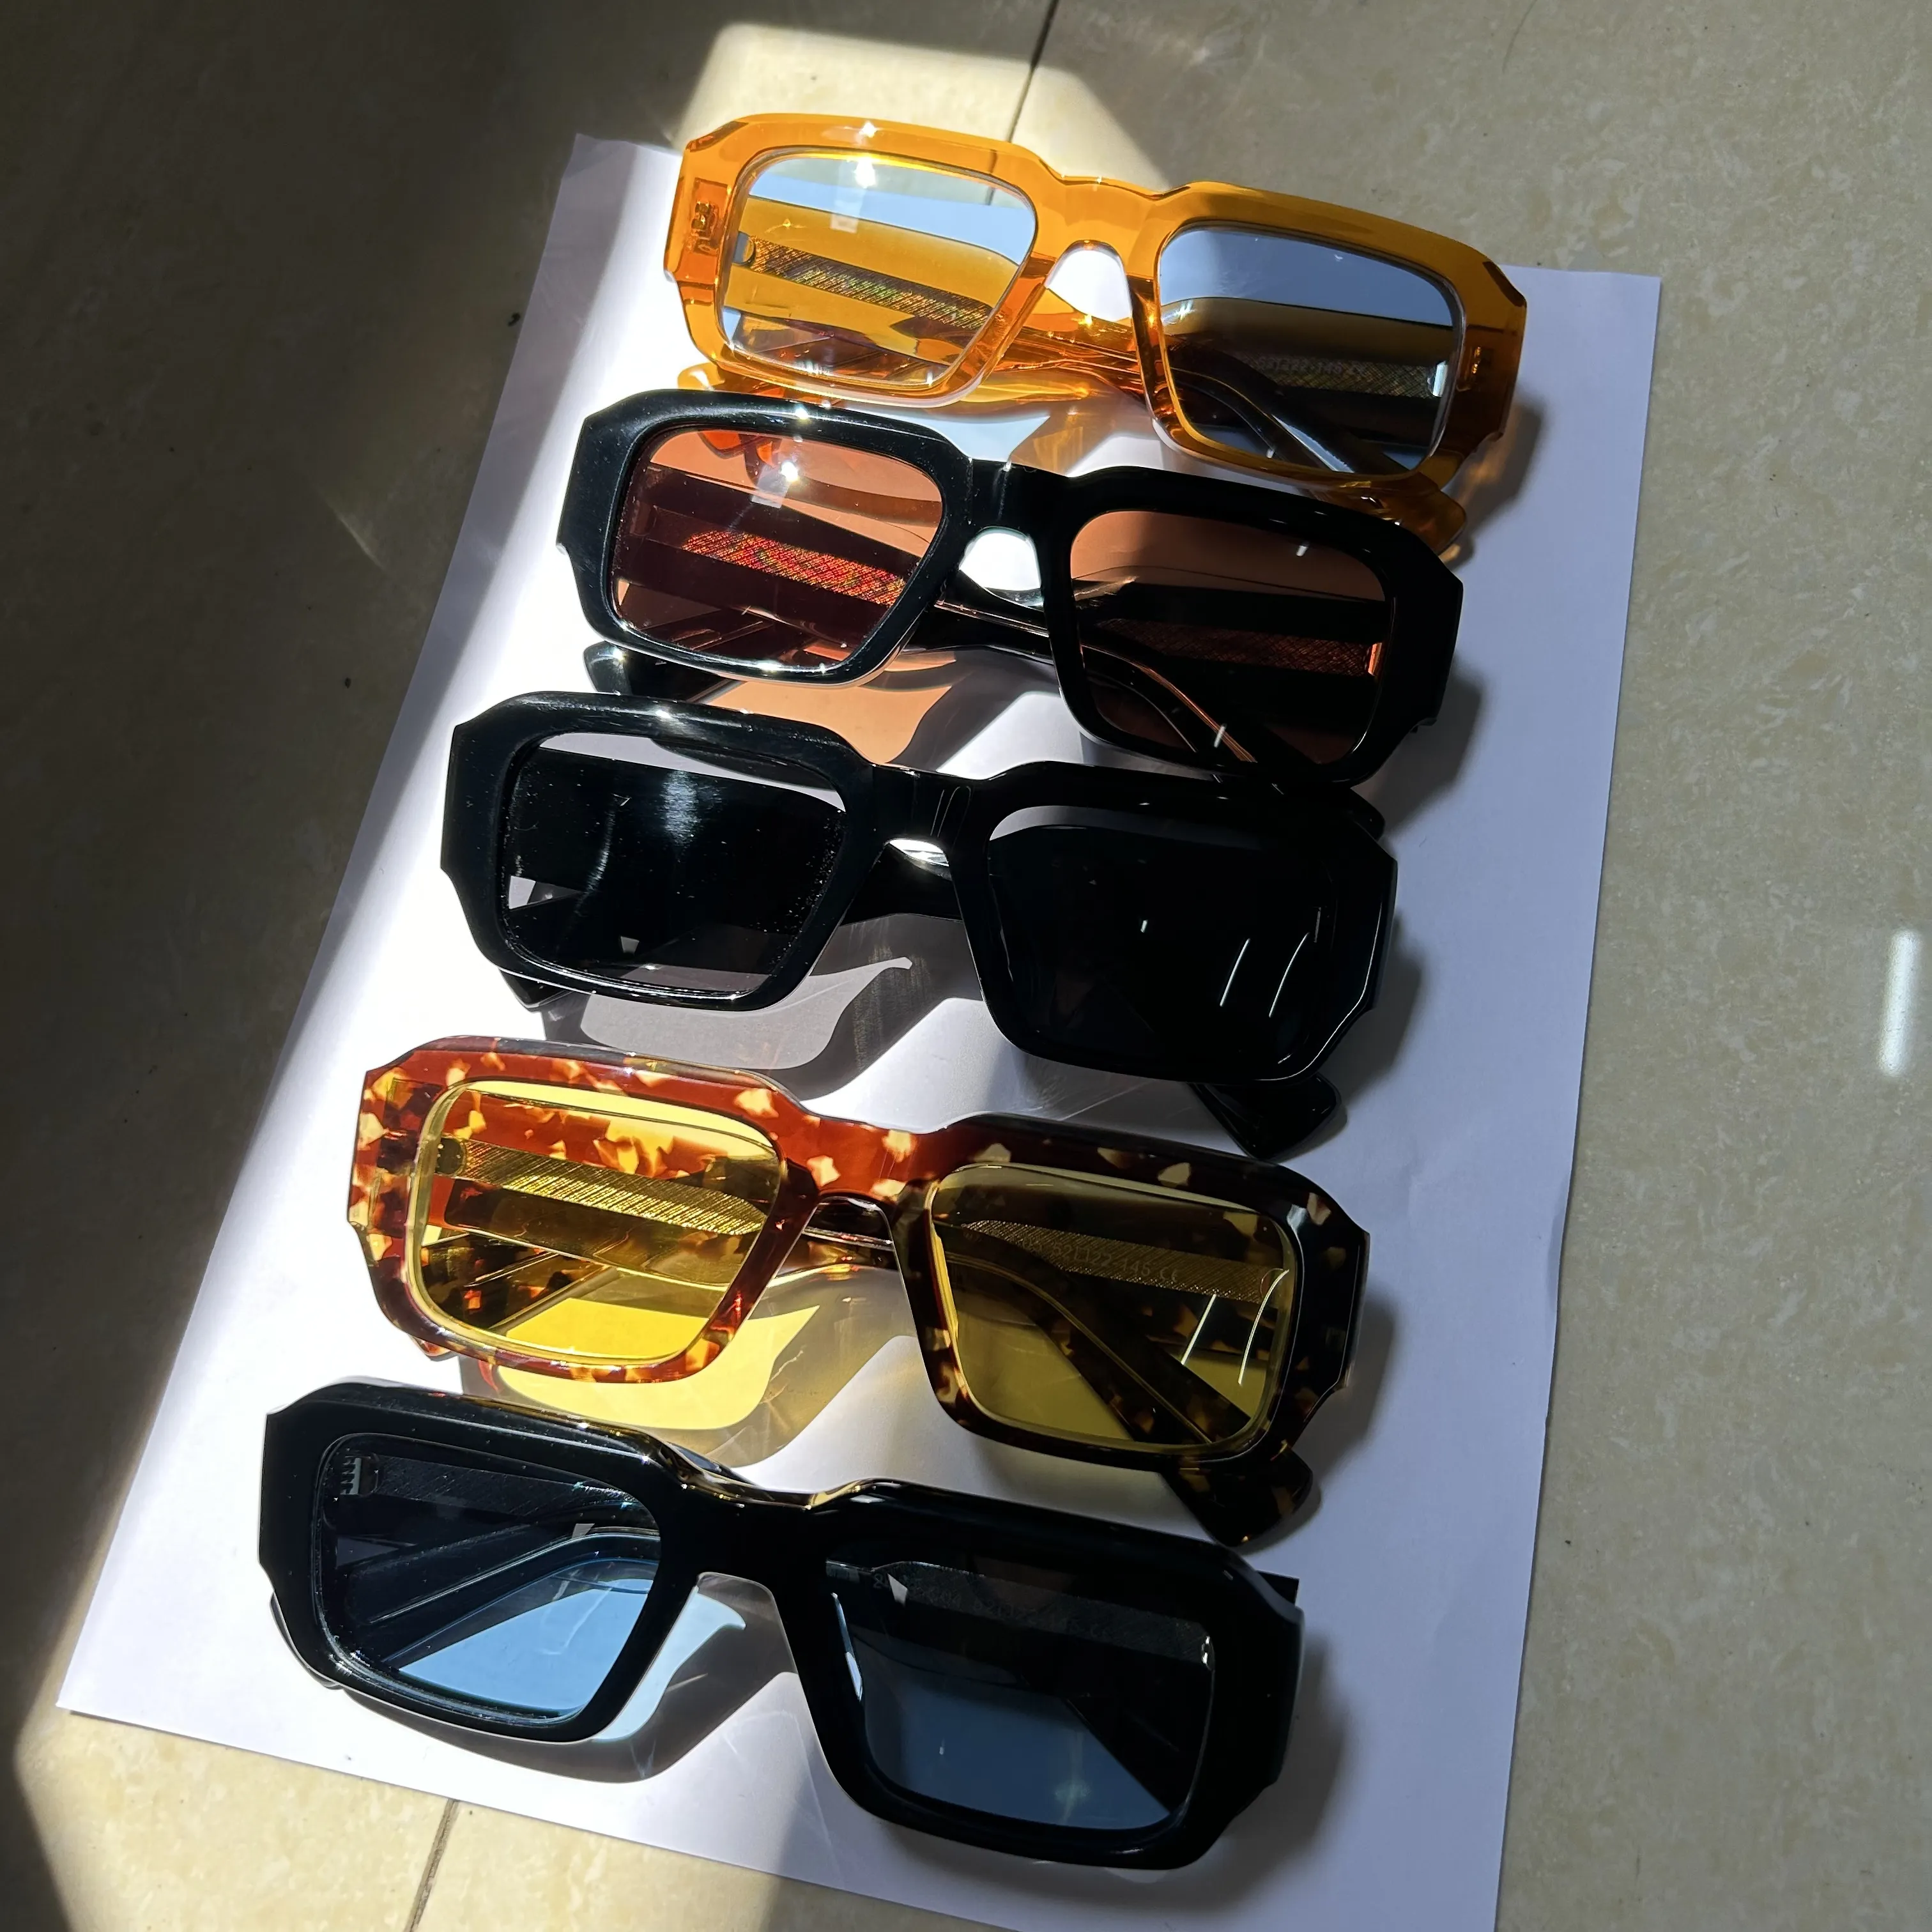 2406 grandes montures lunettes De soleil polarisées marque De luxe nuances cadres épais acétate lunettes De soleil femmes hommes Gafas De Sol